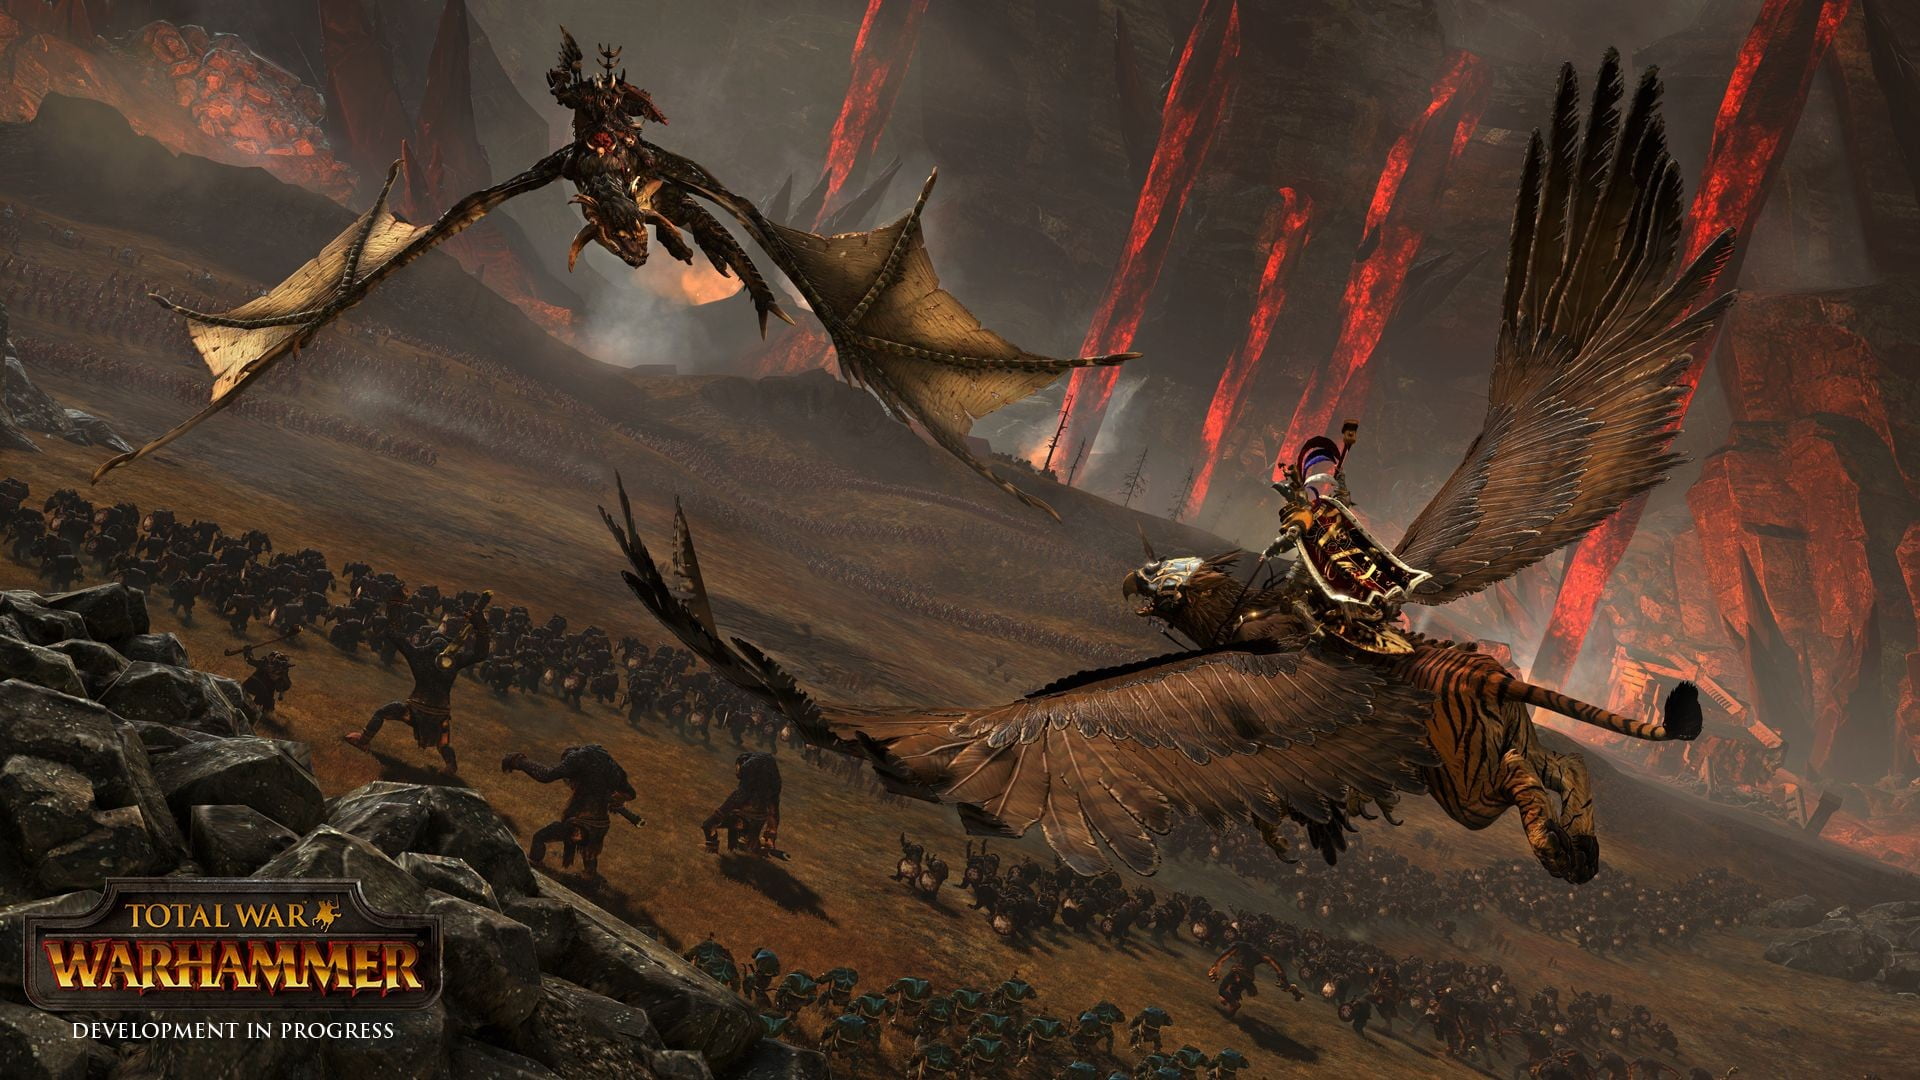 Total War WarHammer digital wallpaper, Total War: Warhammer, orcs